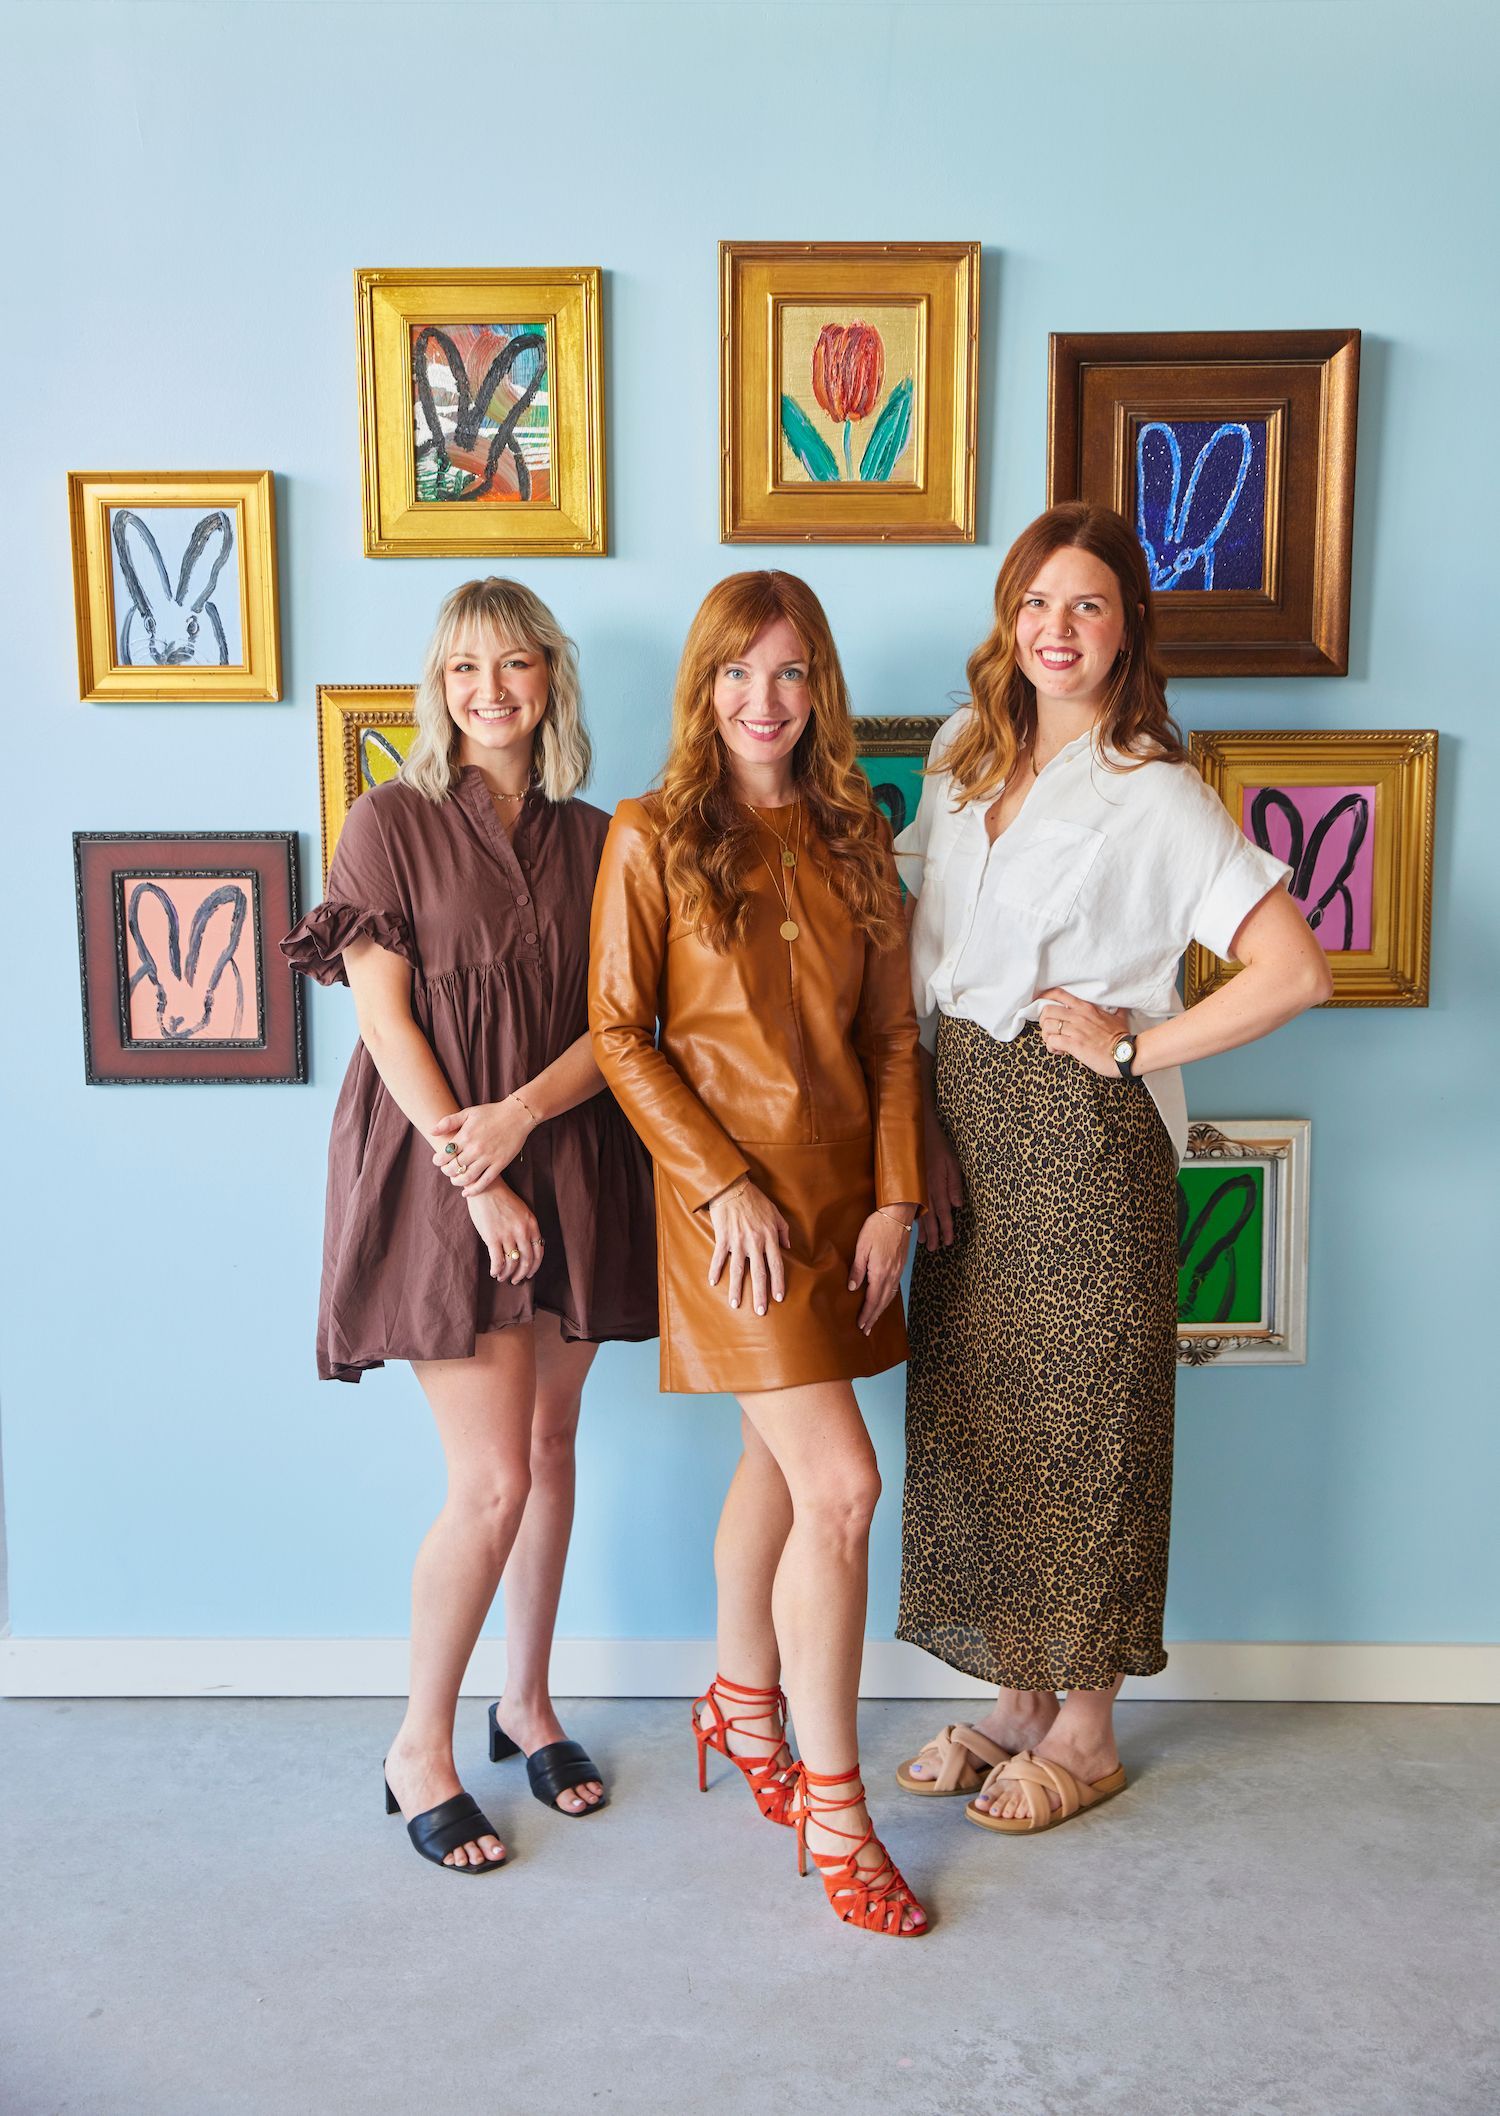 Gallery team, Liz Lidgett, Tina Ehrlich, Monika Wiley